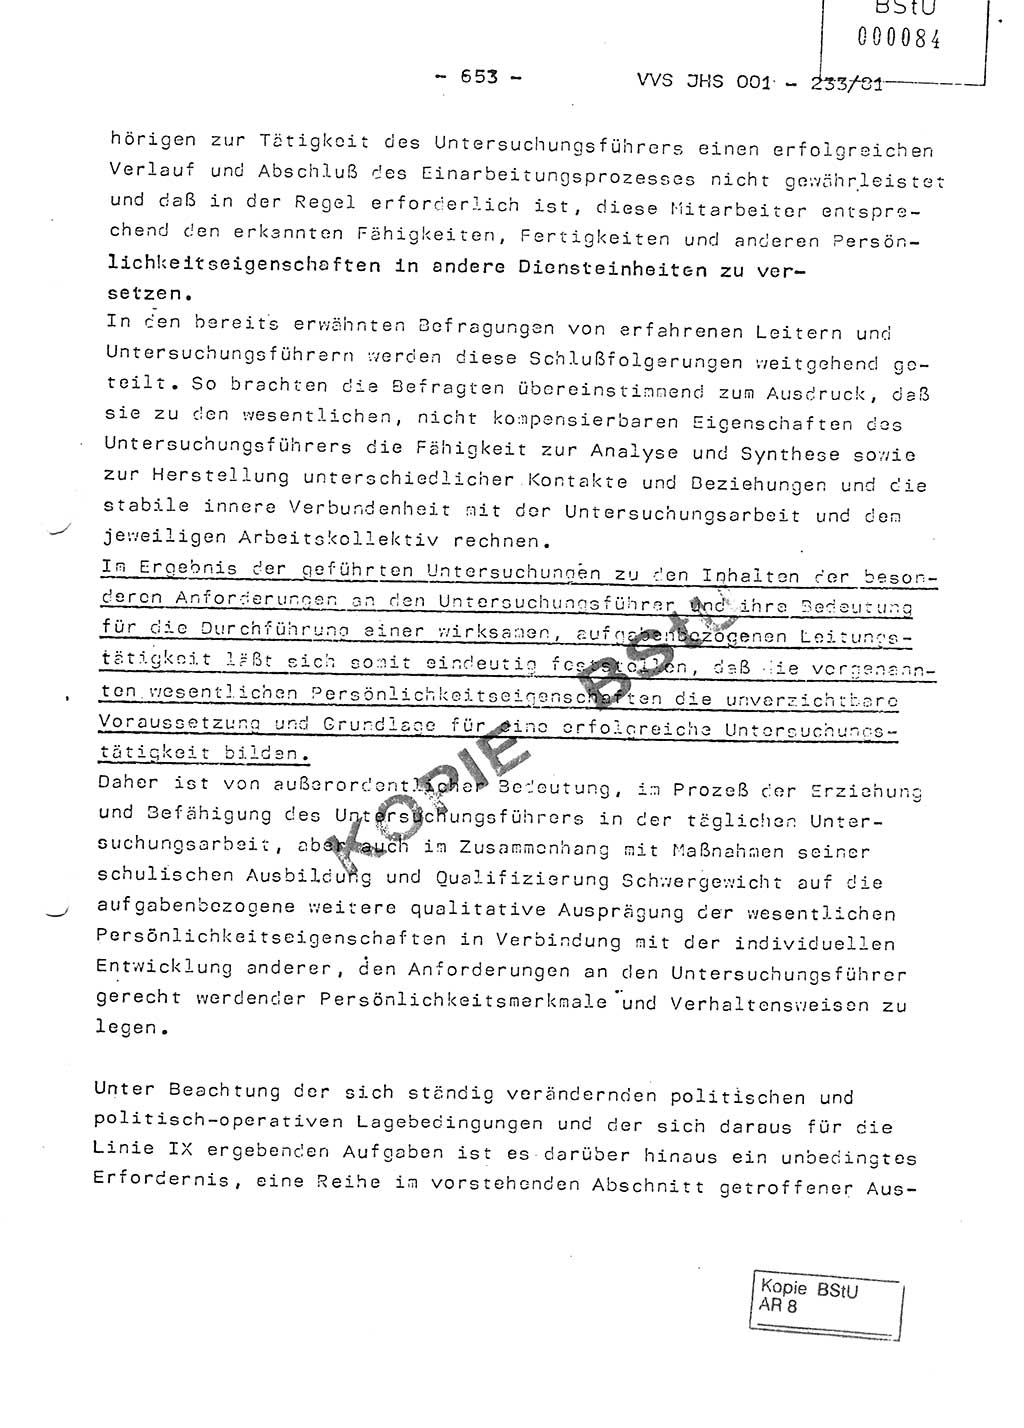 Dissertation Oberstleutnant Horst Zank (JHS), Oberstleutnant Dr. Karl-Heinz Knoblauch (JHS), Oberstleutnant Gustav-Adolf Kowalewski (HA Ⅸ), Oberstleutnant Wolfgang Plötner (HA Ⅸ), Ministerium für Staatssicherheit (MfS) [Deutsche Demokratische Republik (DDR)], Juristische Hochschule (JHS), Vertrauliche Verschlußsache (VVS) o001-233/81, Potsdam 1981, Blatt 653 (Diss. MfS DDR JHS VVS o001-233/81 1981, Bl. 653)